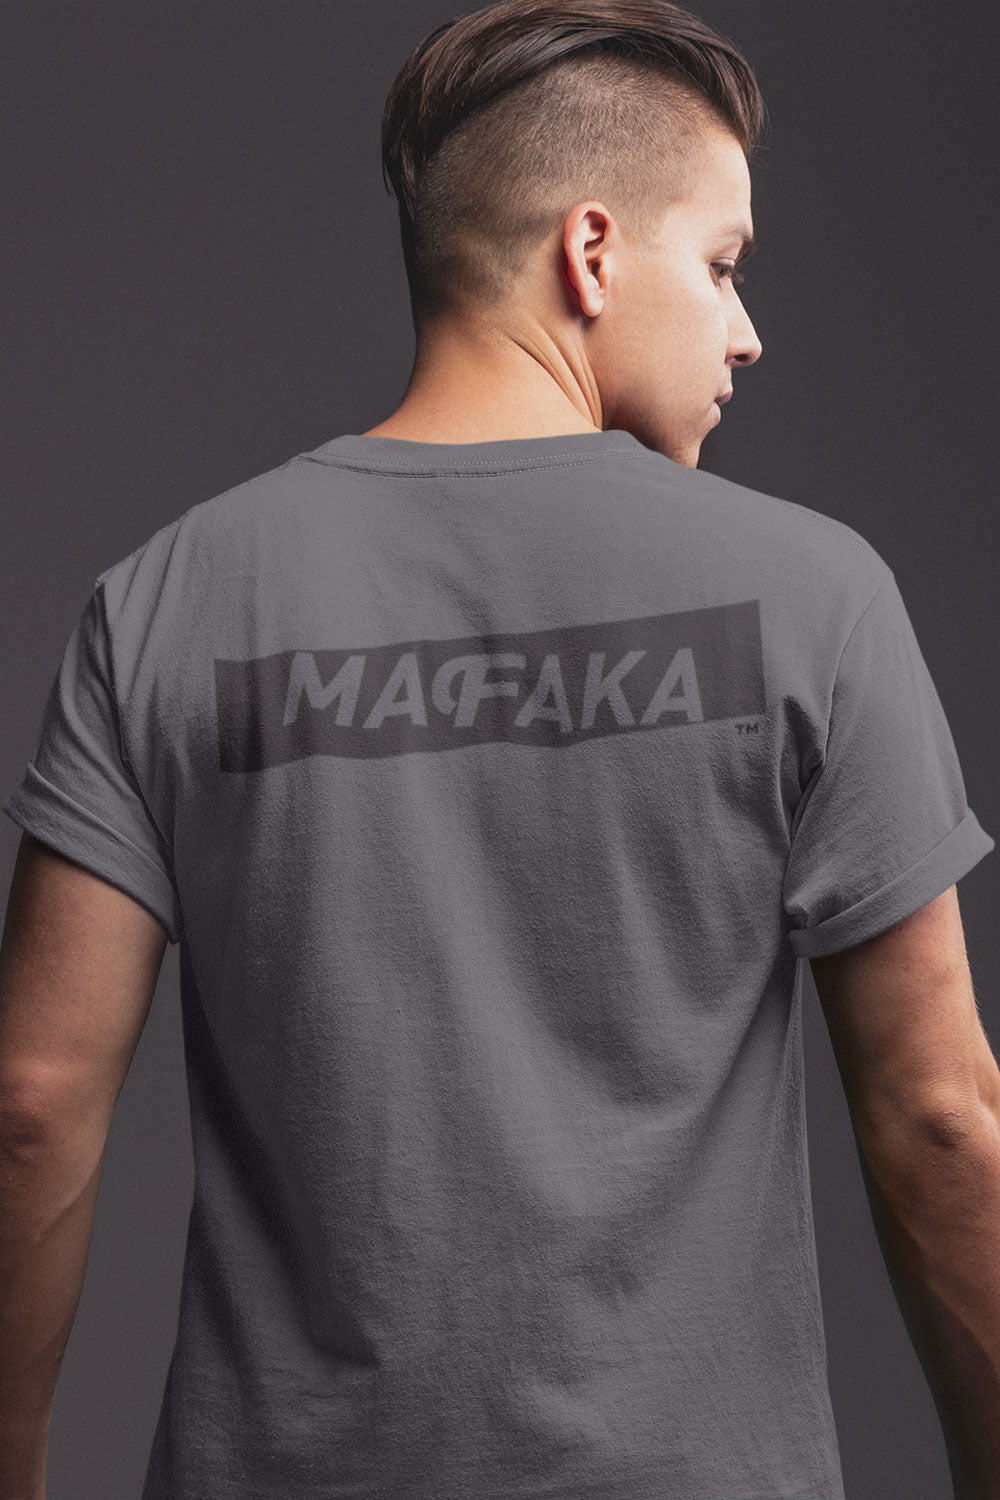 Mafaka Men's Enzyme Washed Soft Cotton T-Shirt - Short Sleeve Original